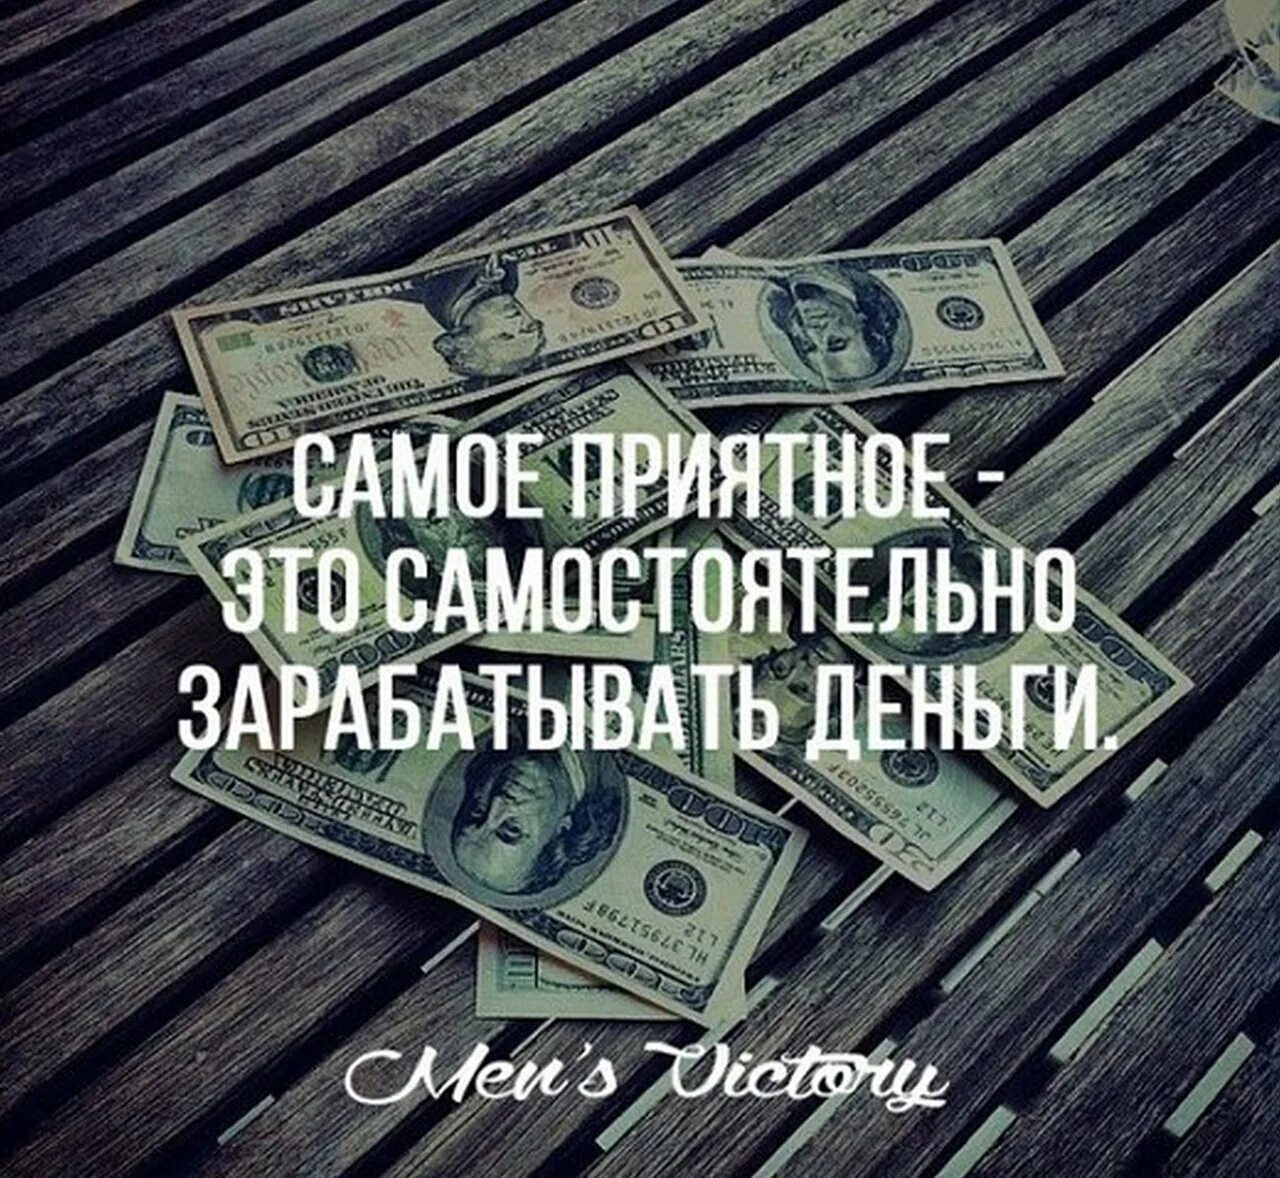 Чтобы хорошо зарабатывать нужно. Мотивация деньги. Цитаты про деньги и богатство. Цитаты про деньги. Афоризмы о деньгах и богатстве.